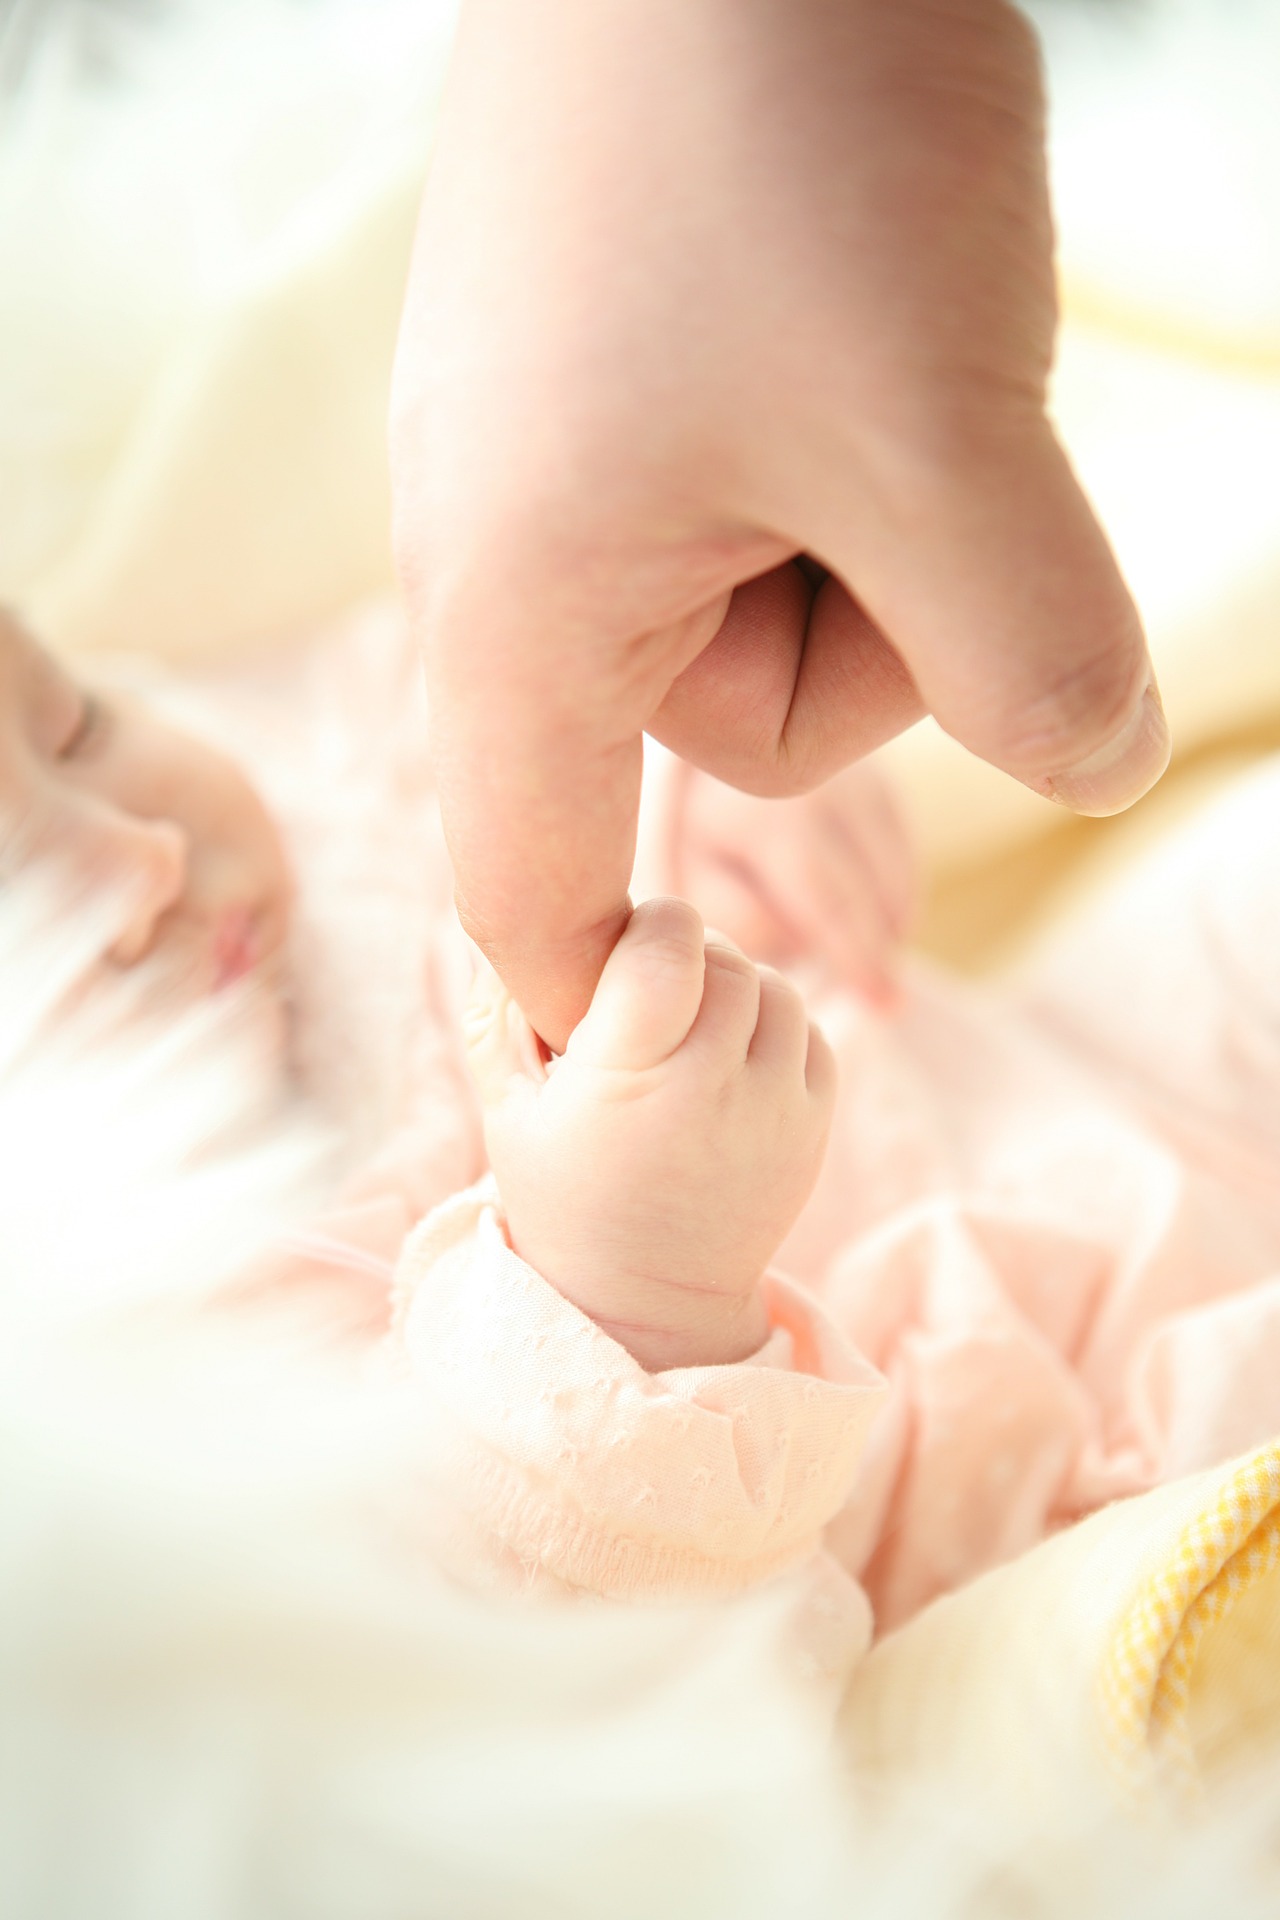 Bebé agarrado a un dedo